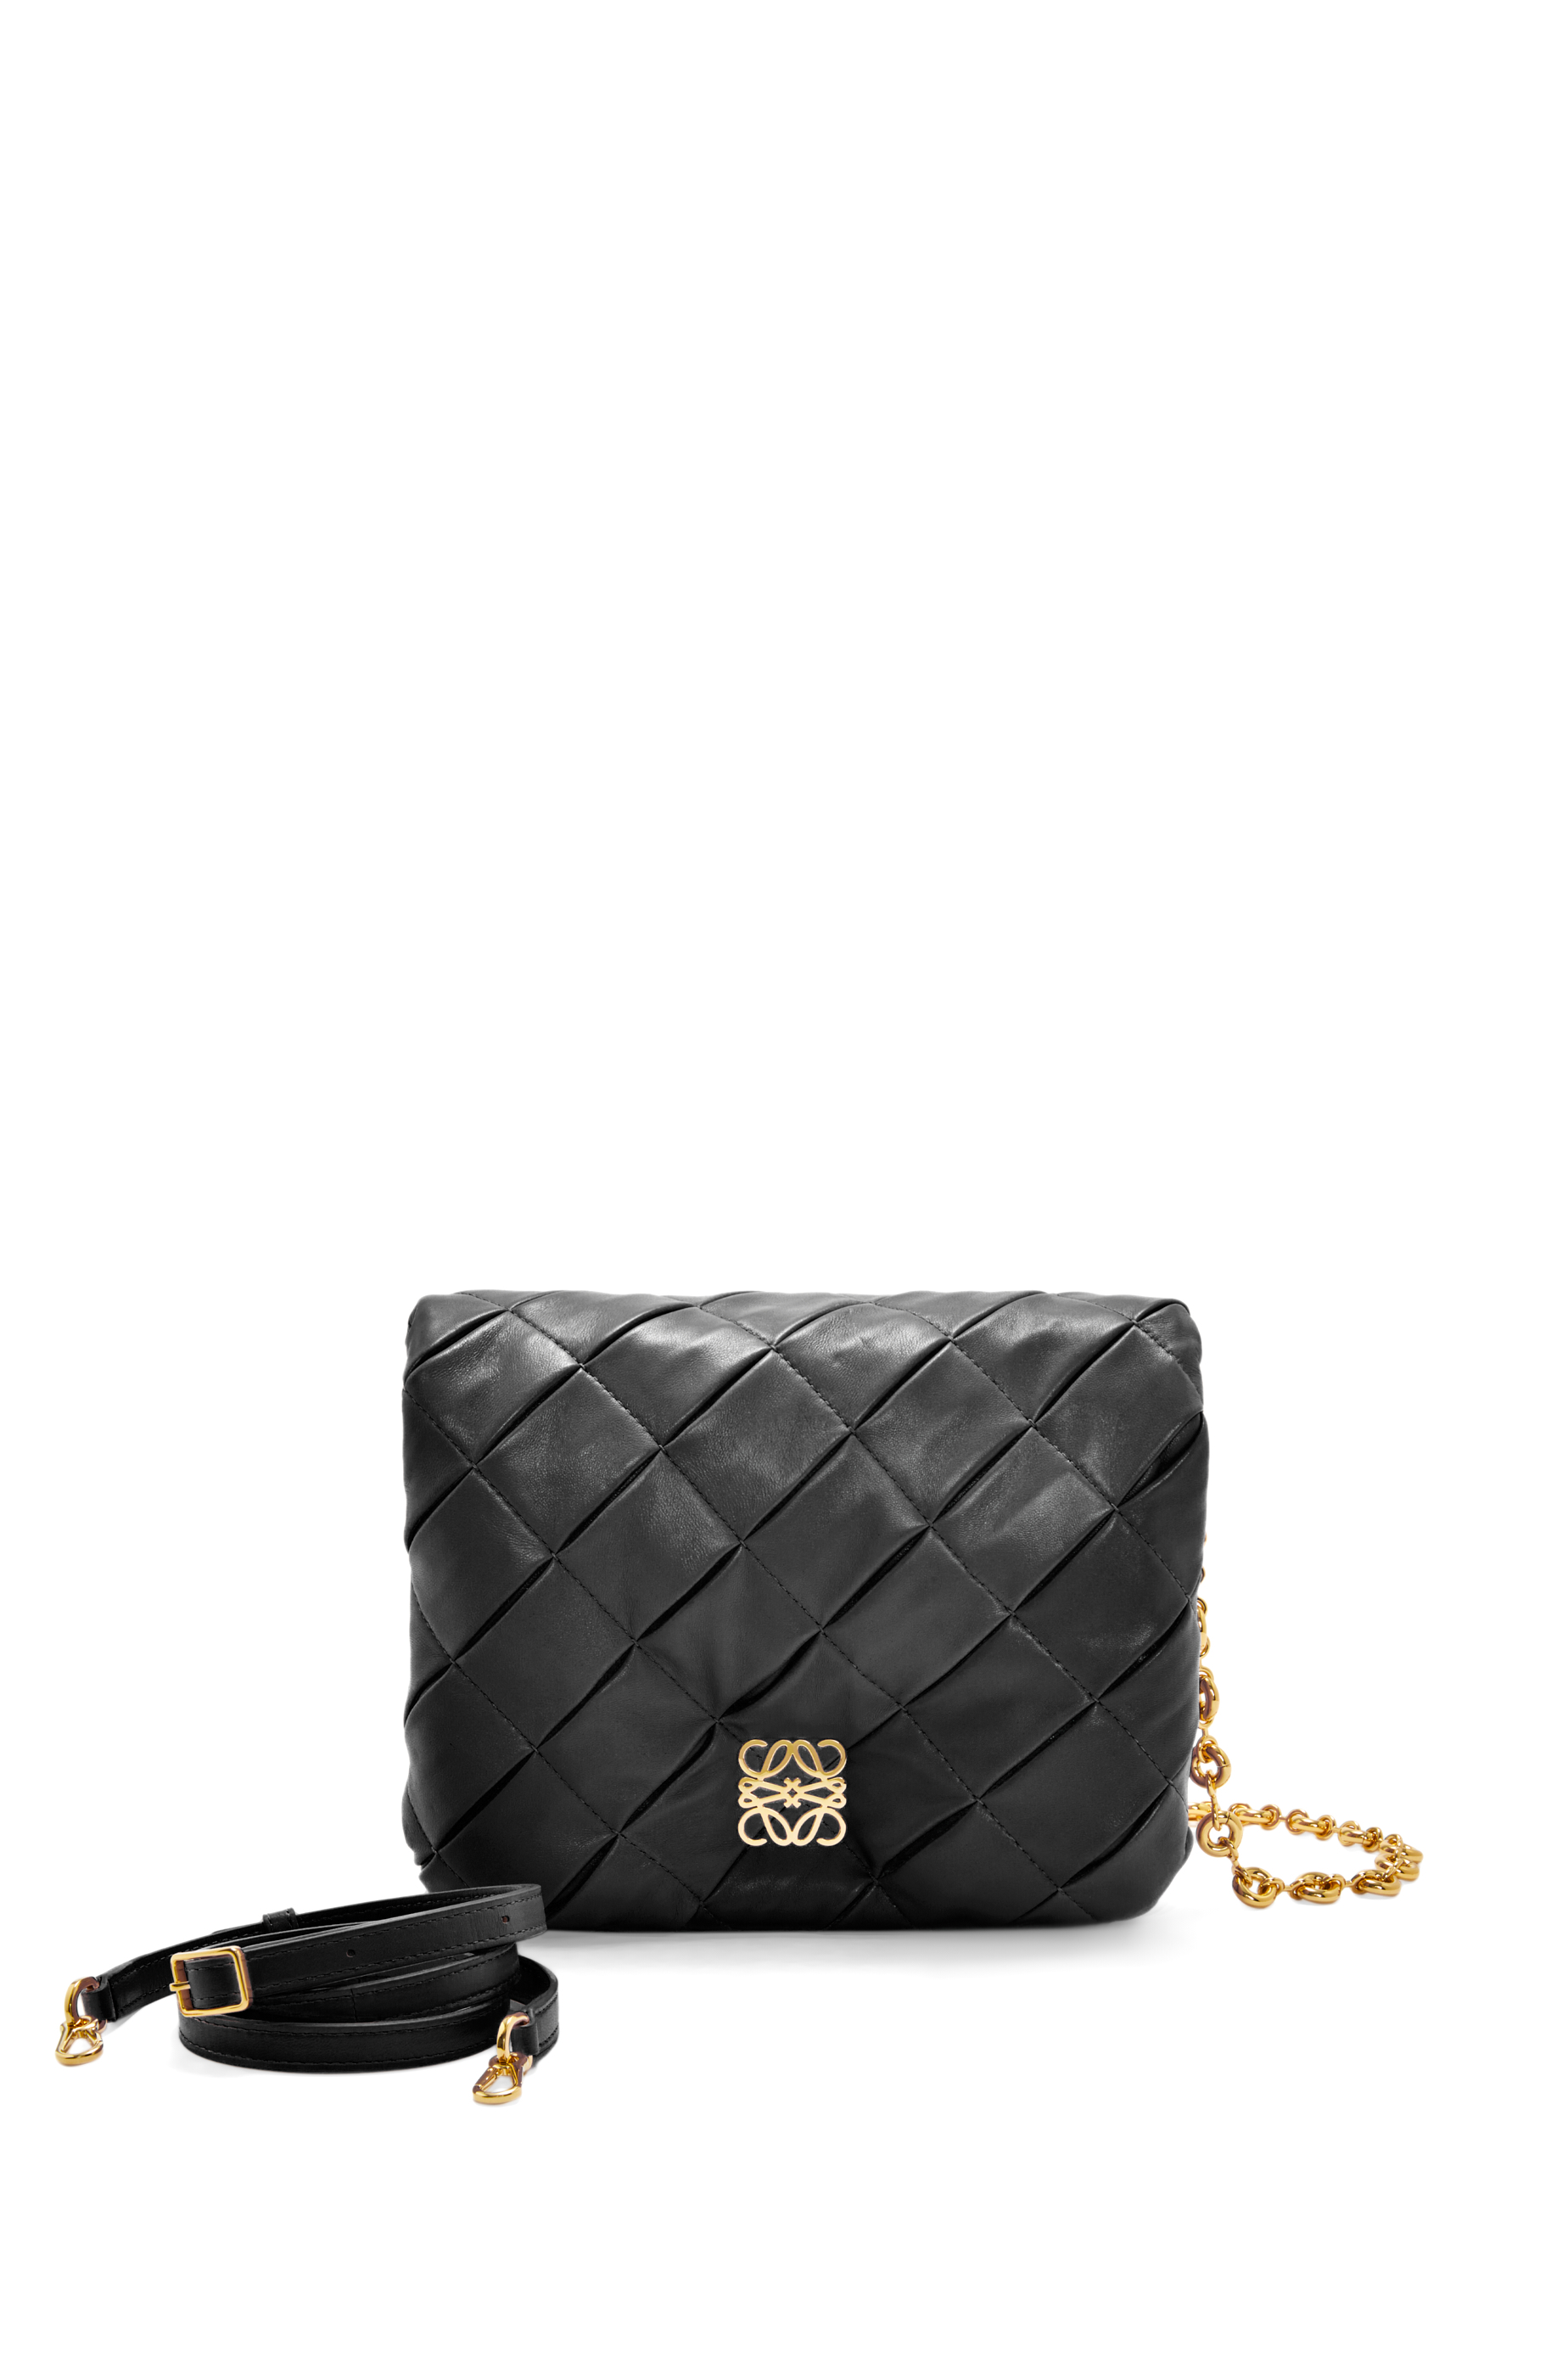 Goya Medium Leather Shoulder Bag in Black - Loewe